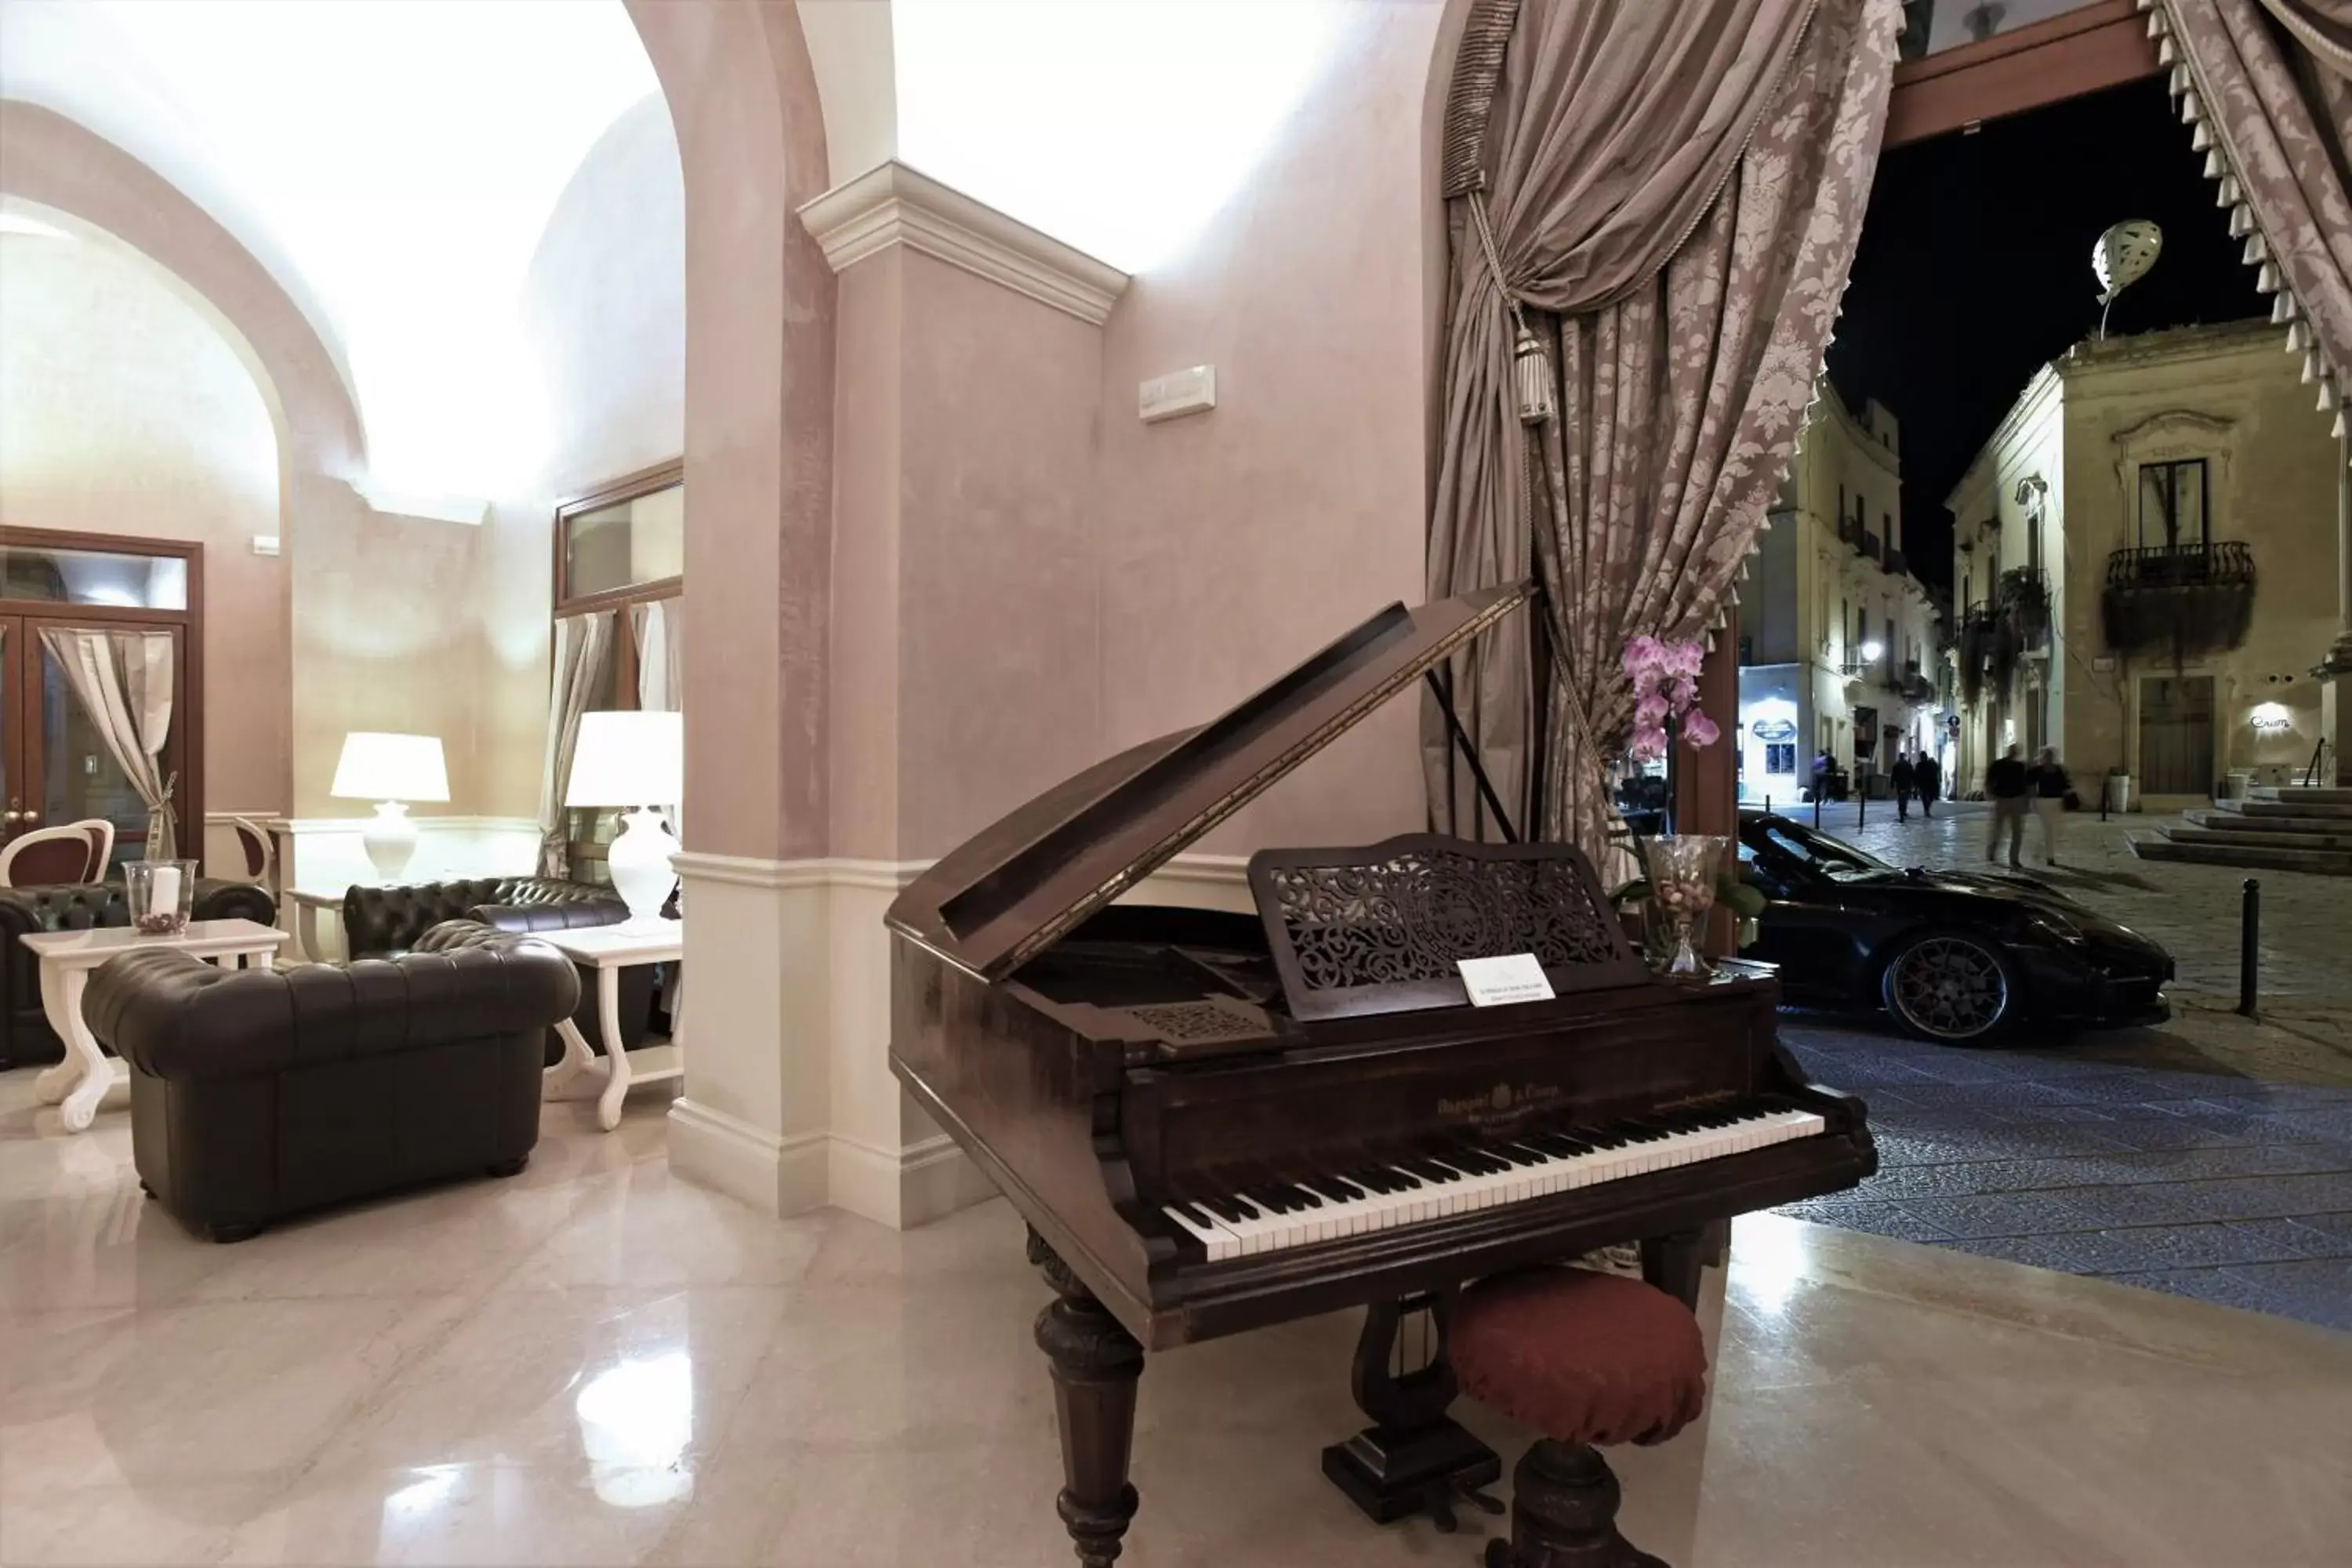 Lobby or reception in Suite Hotel Santa Chiara